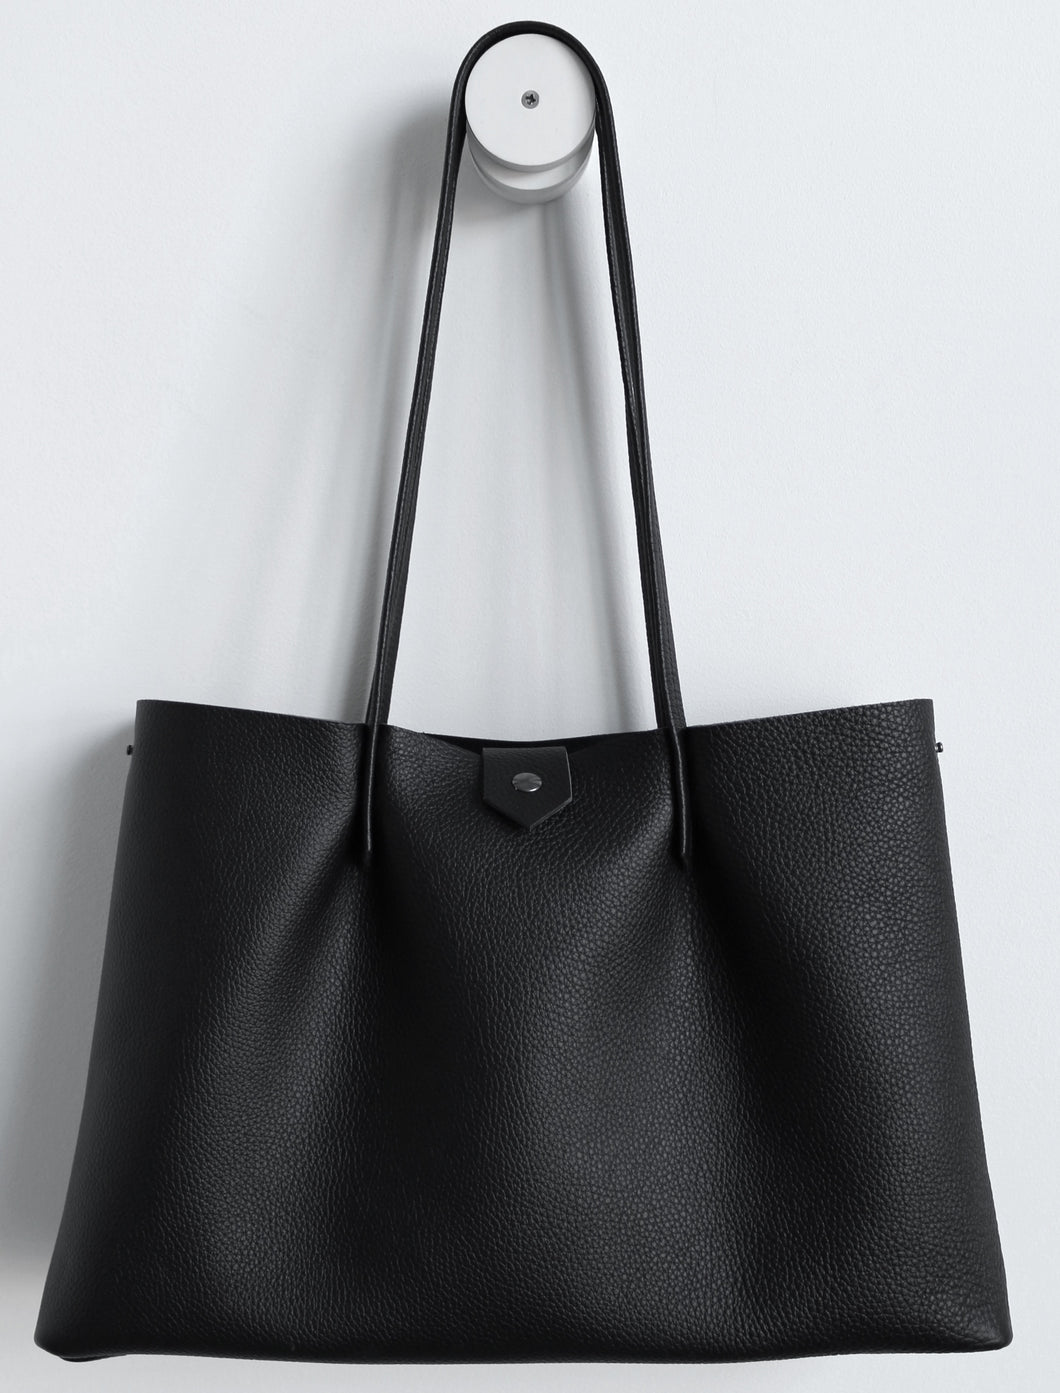 Amos frrry shoulder bag long handle black lindos calf leather